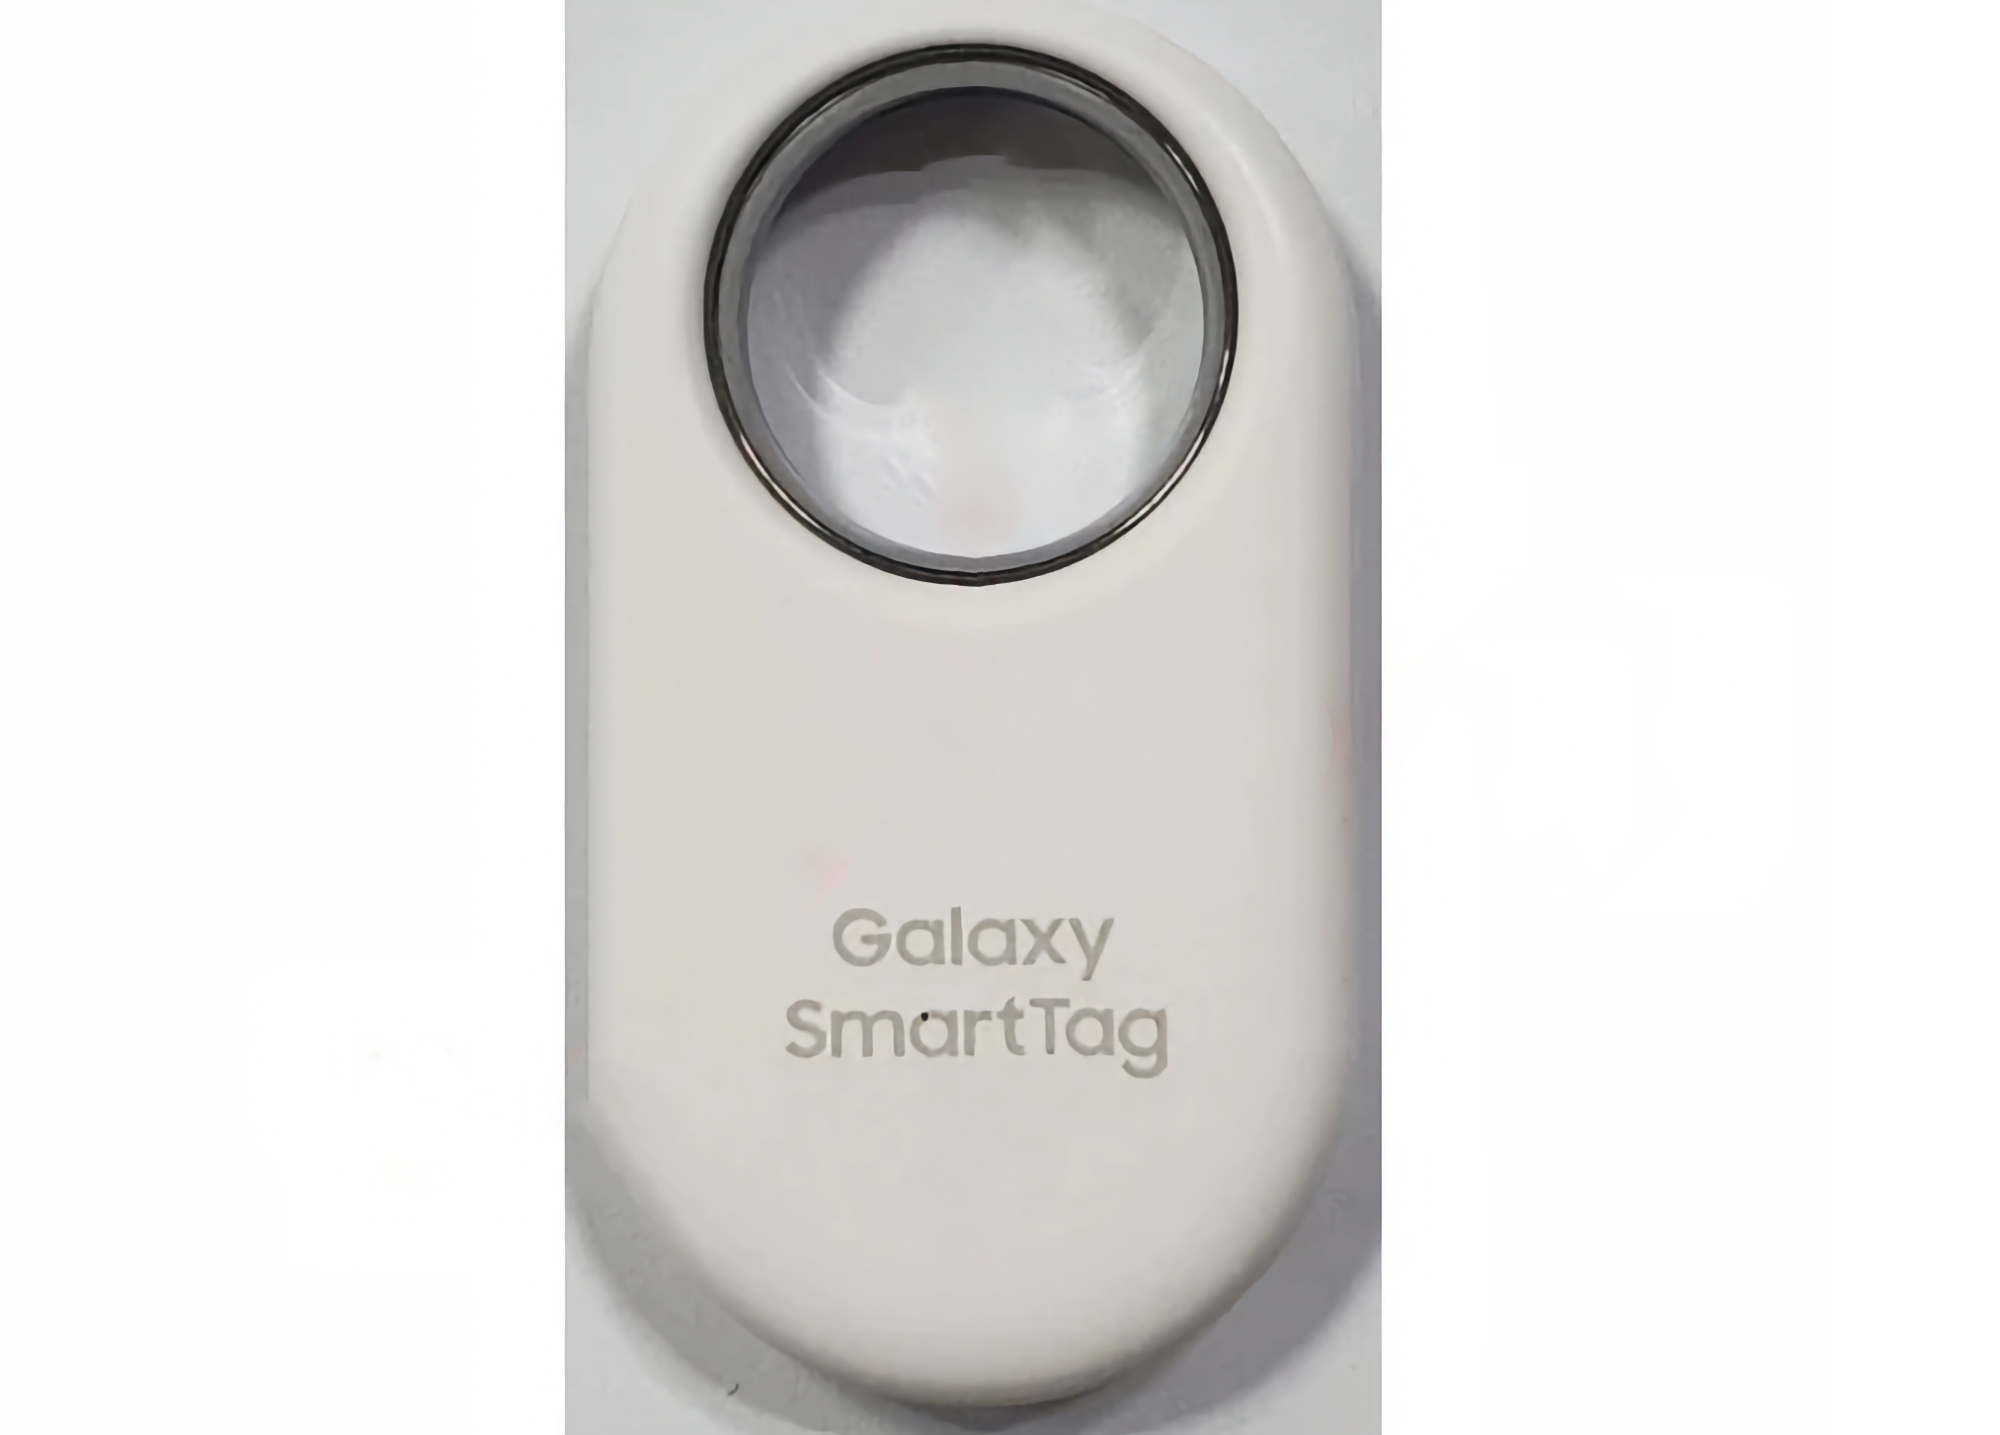 Ecco come sarà il nuovo tracker SmartTag di Samsung